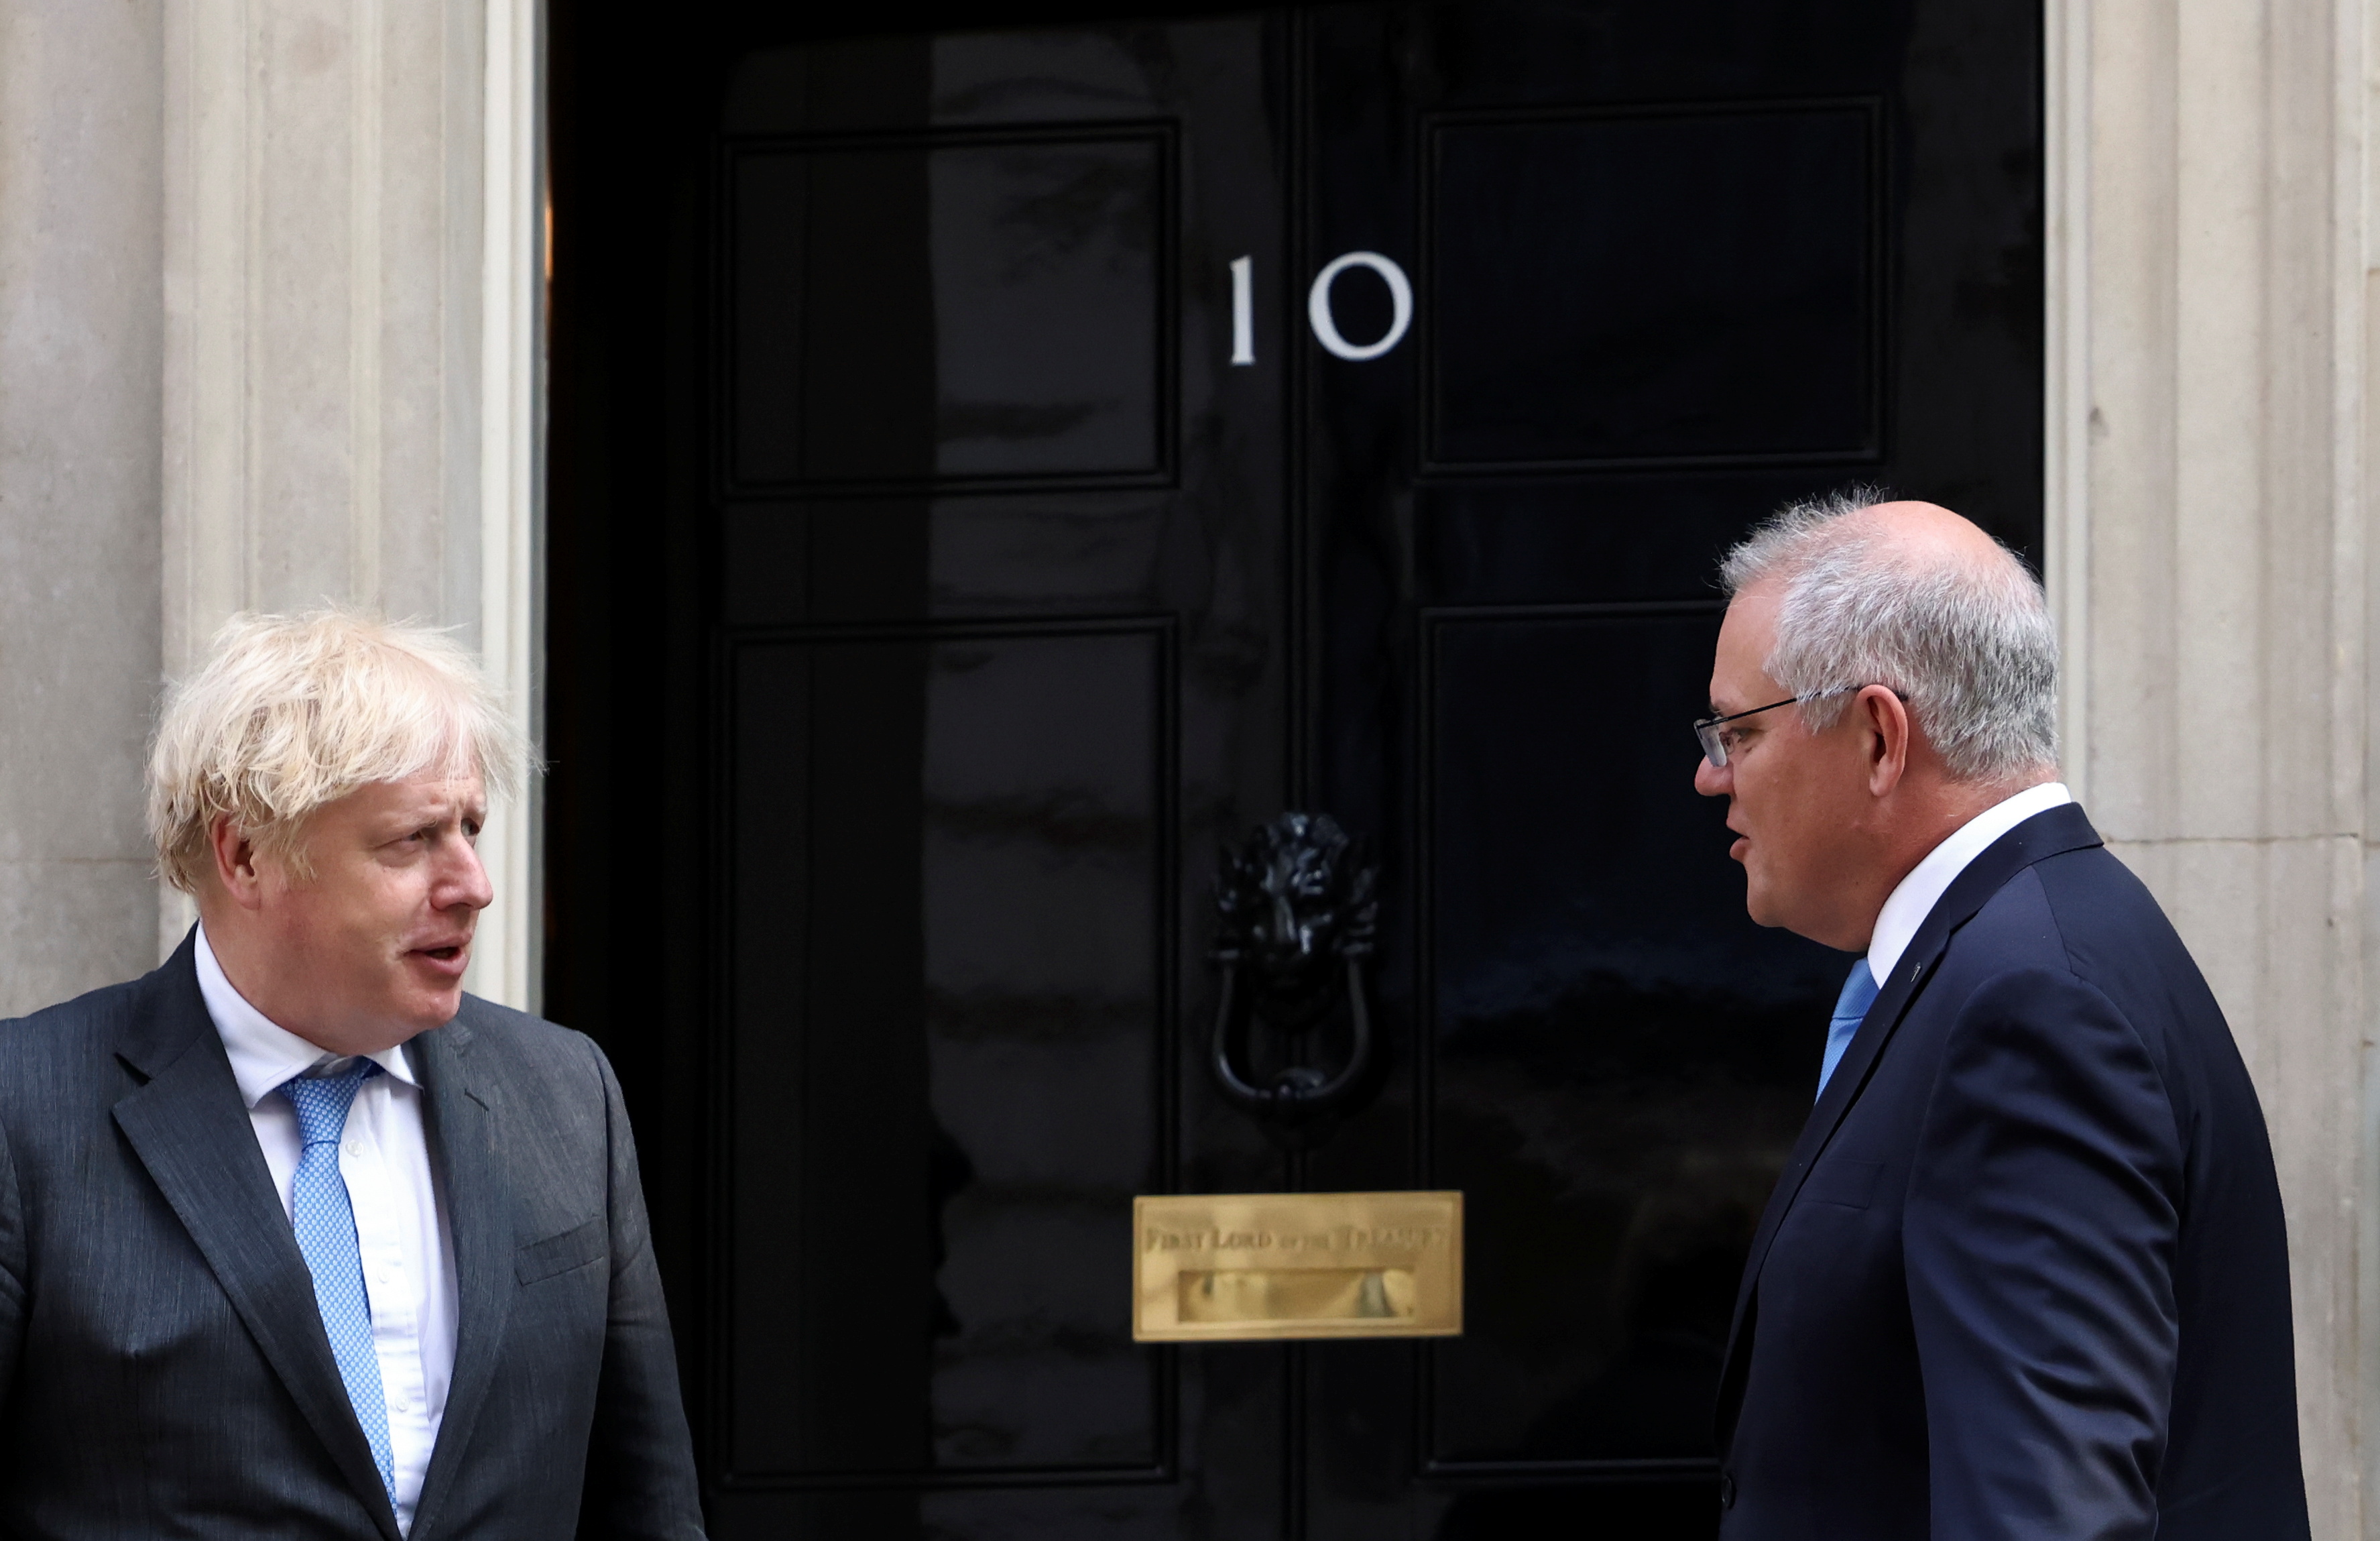 El primer ministro británico Boris Johnson se reúne con su homólogo australiano Scott Morrison en Downing Street en Londres, Gran Bretaña, el 15 de junio de 2021. REUTERS / Henry Nicholls